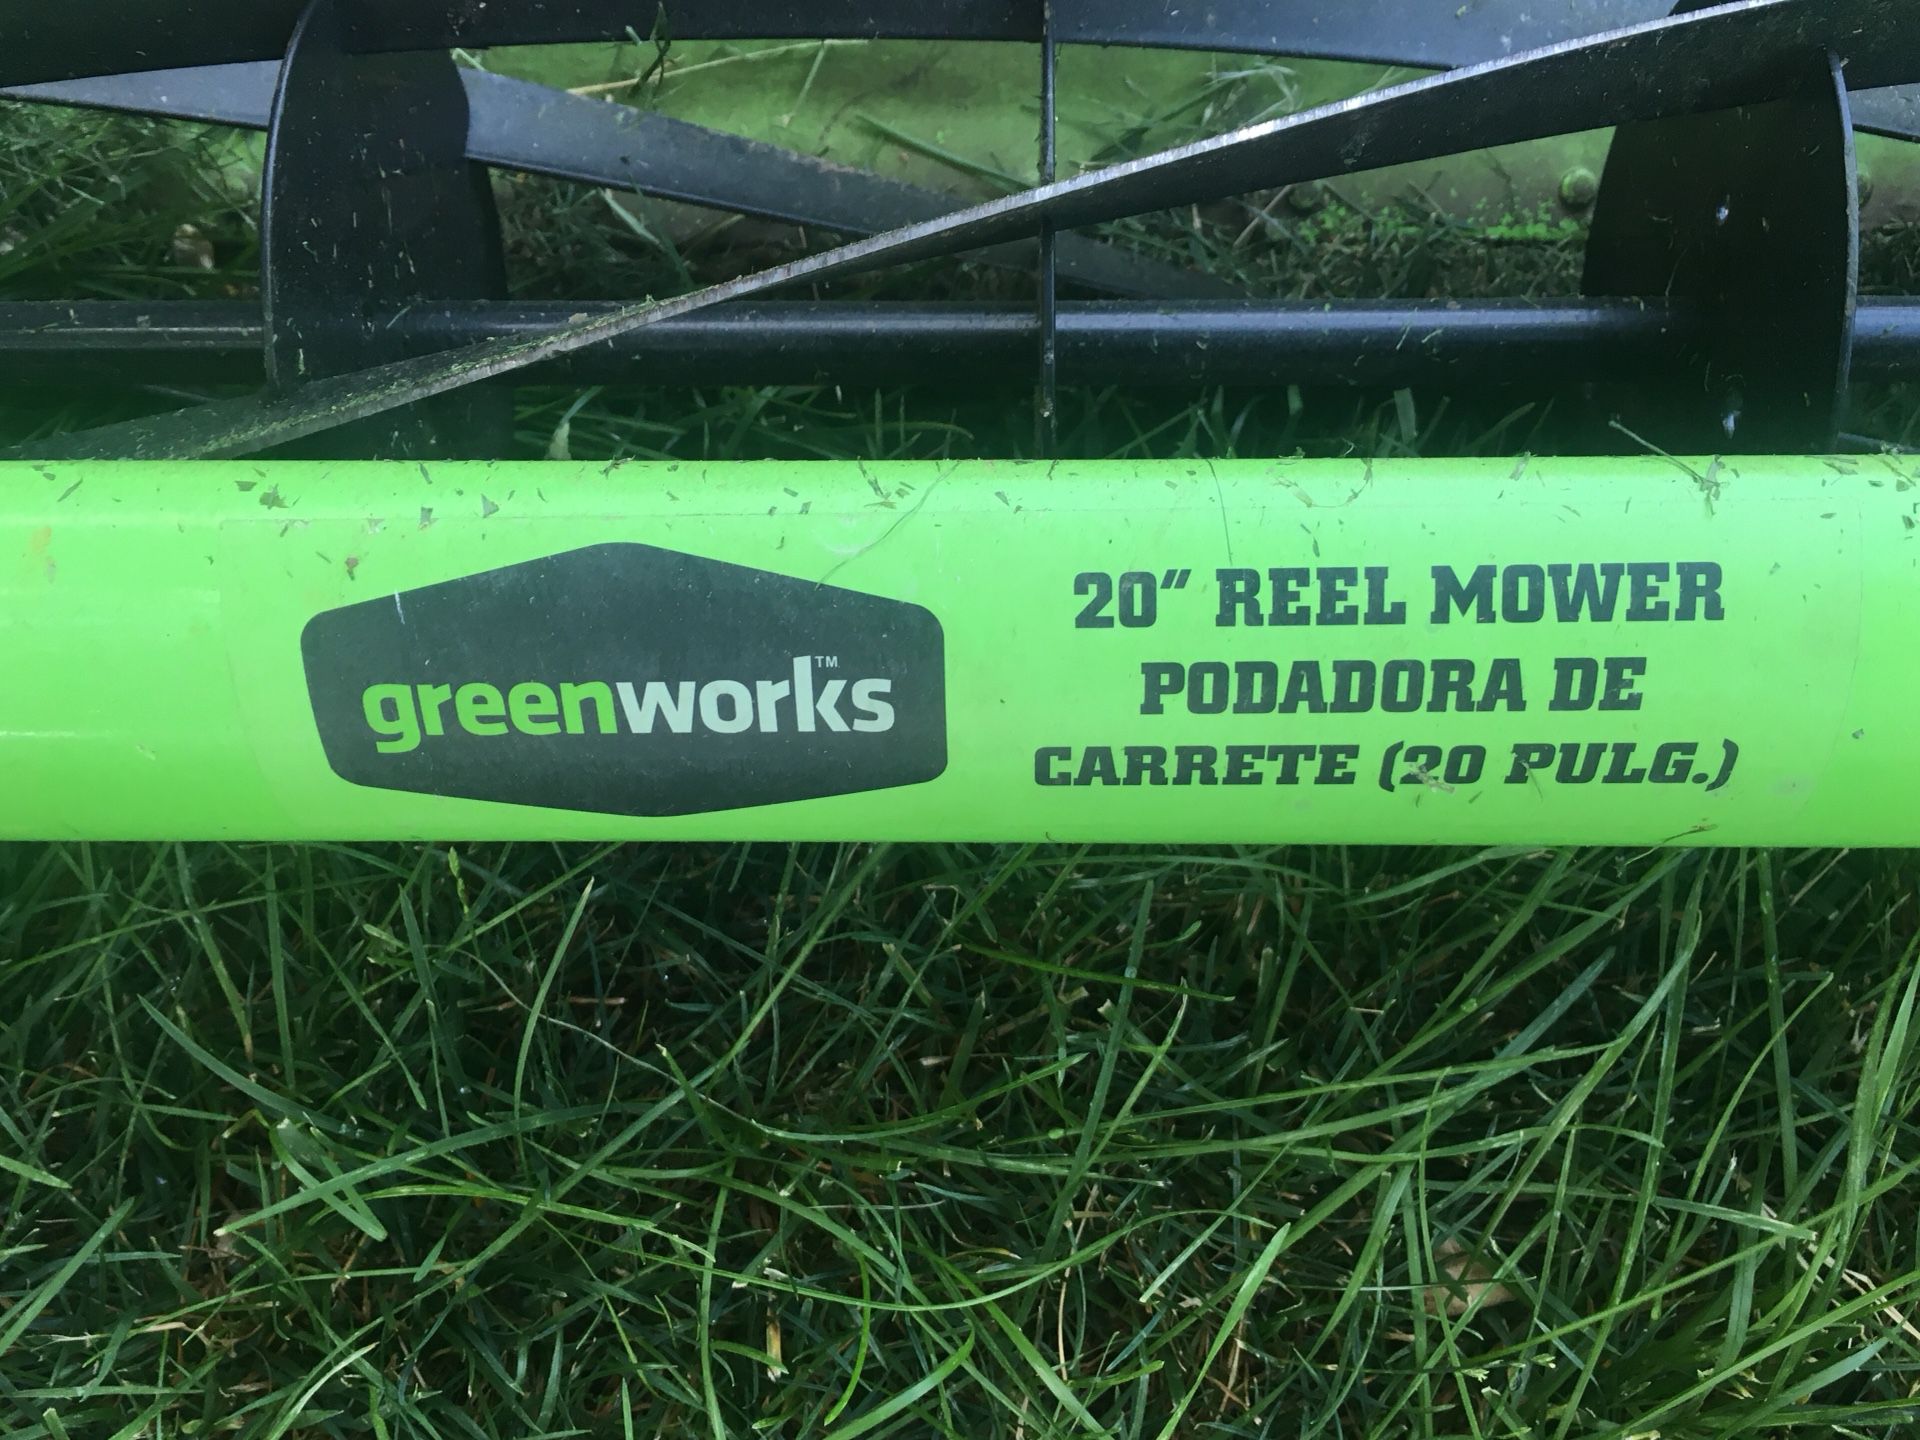 Green works 20” reel mower